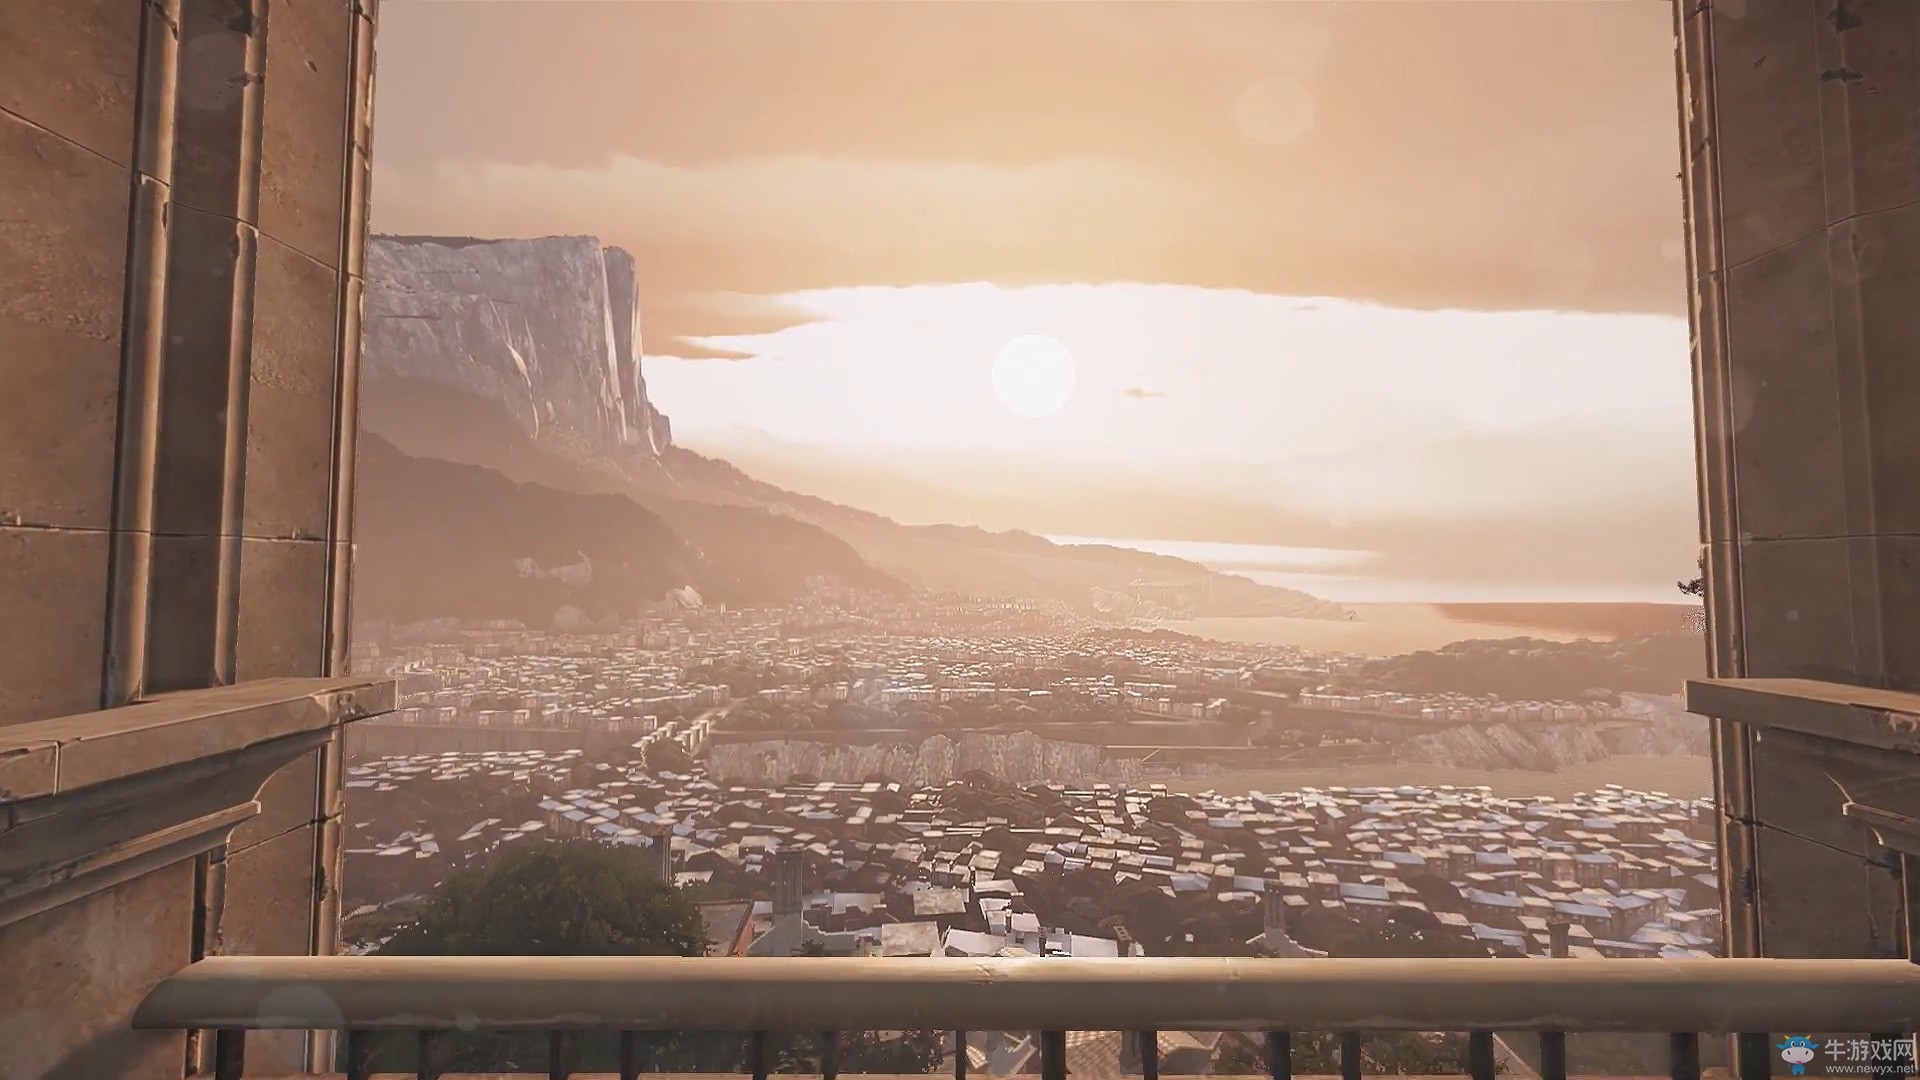 《羞辱2》发售预告公布 今日正式上市 展开美丽的杀人技巧把